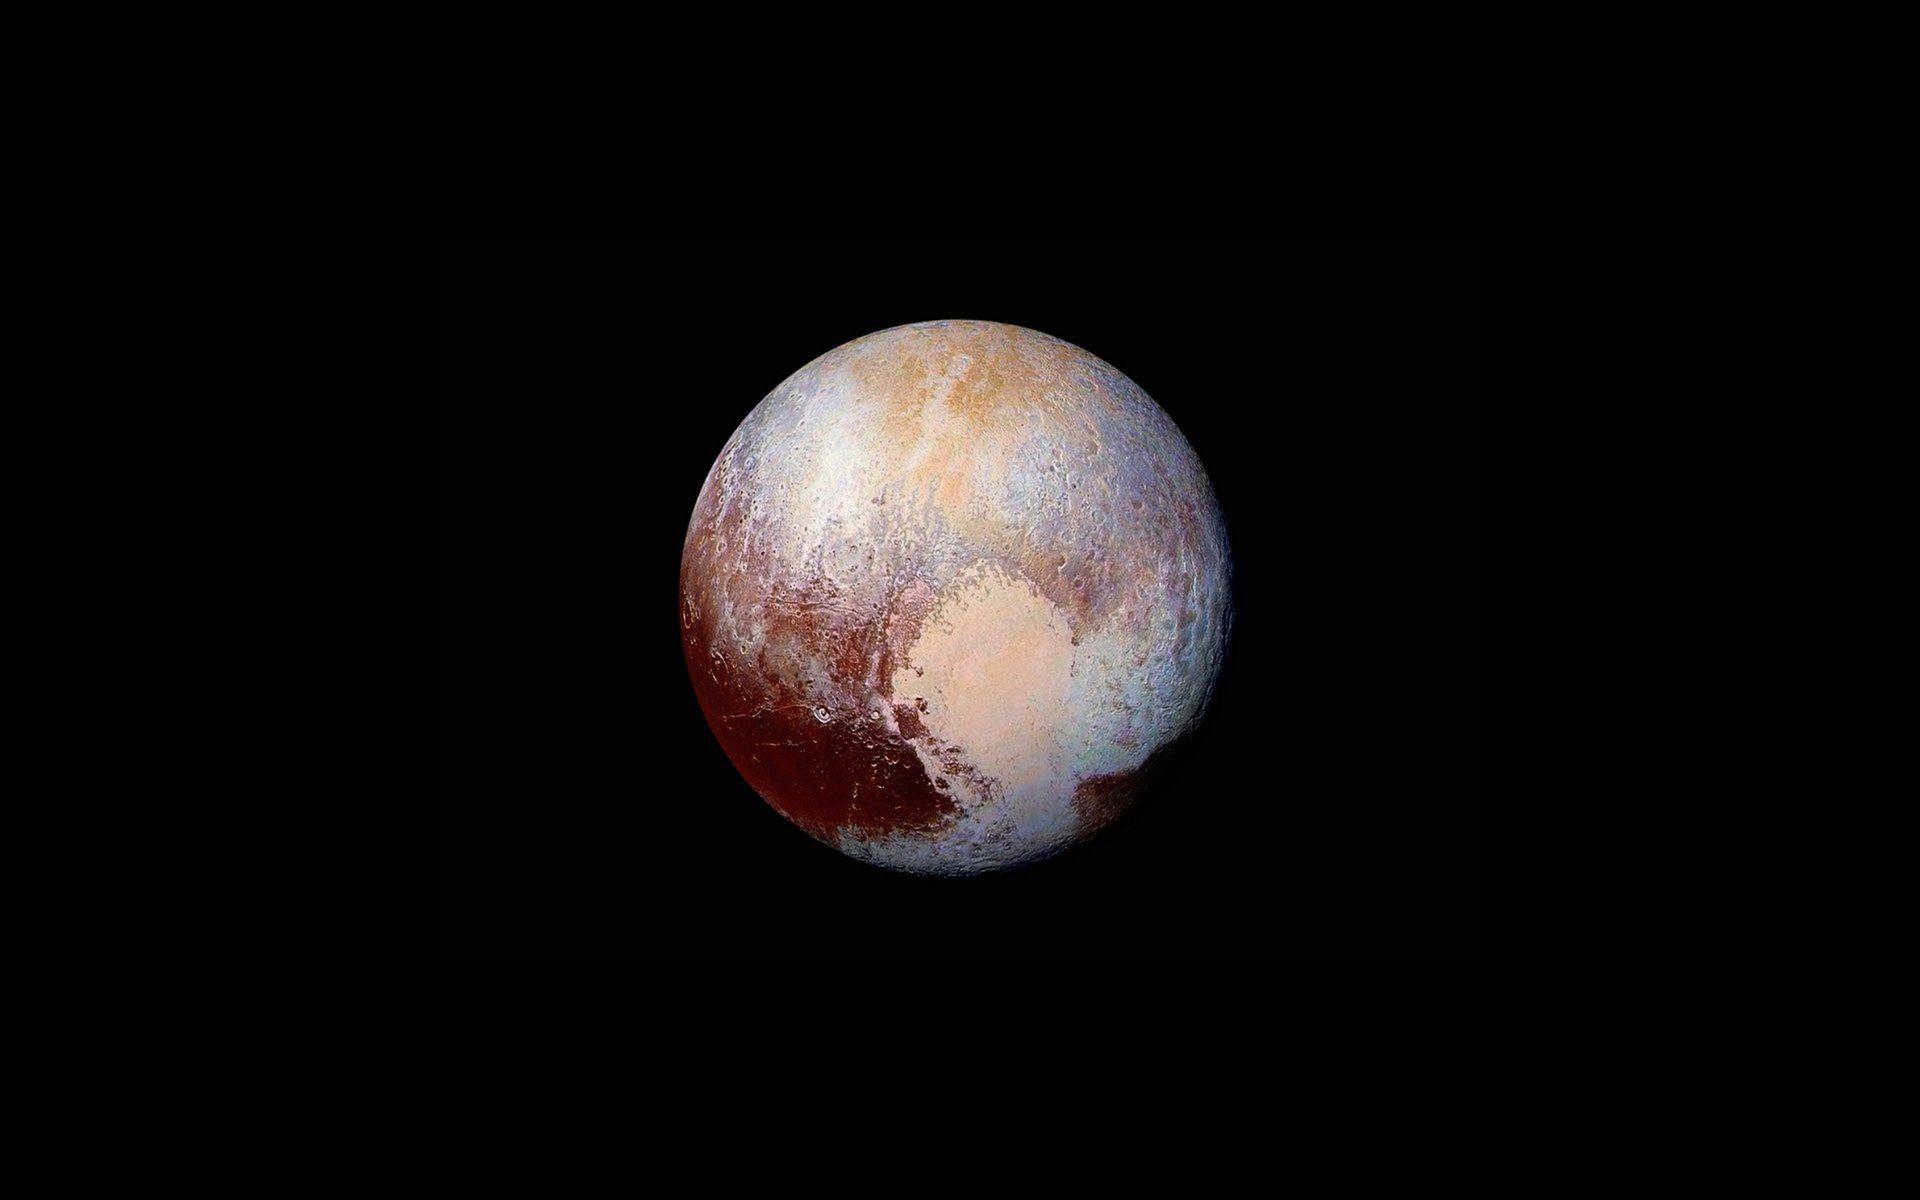 Pluto in False Color